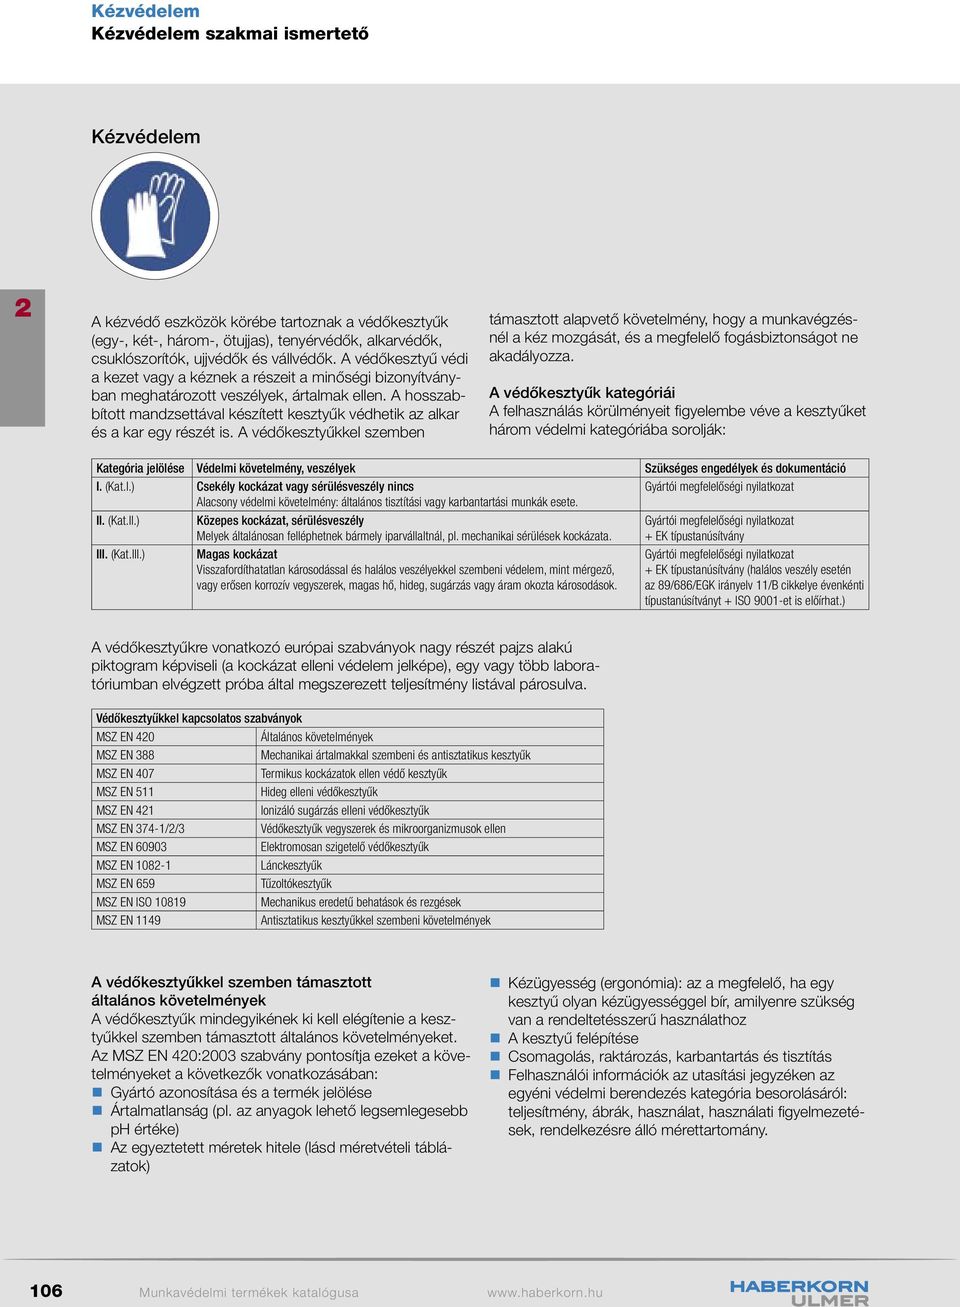 Kézvédelem. Munkavédelmi termékek katalógusa PDF Free Download